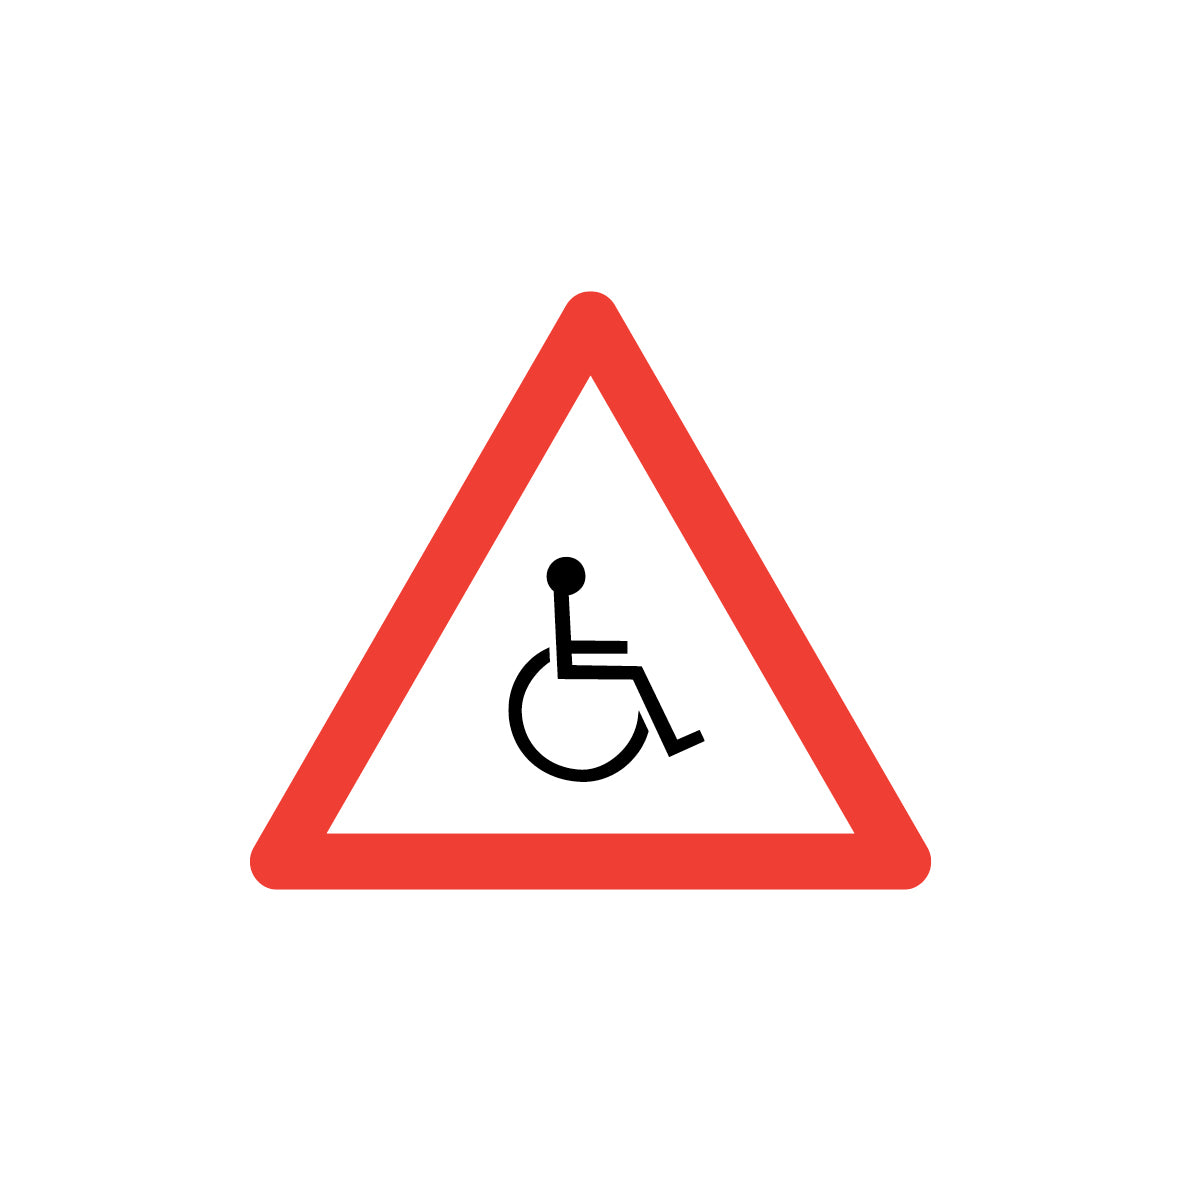 7.G-003 Rollstuhl, Gefahrensignal